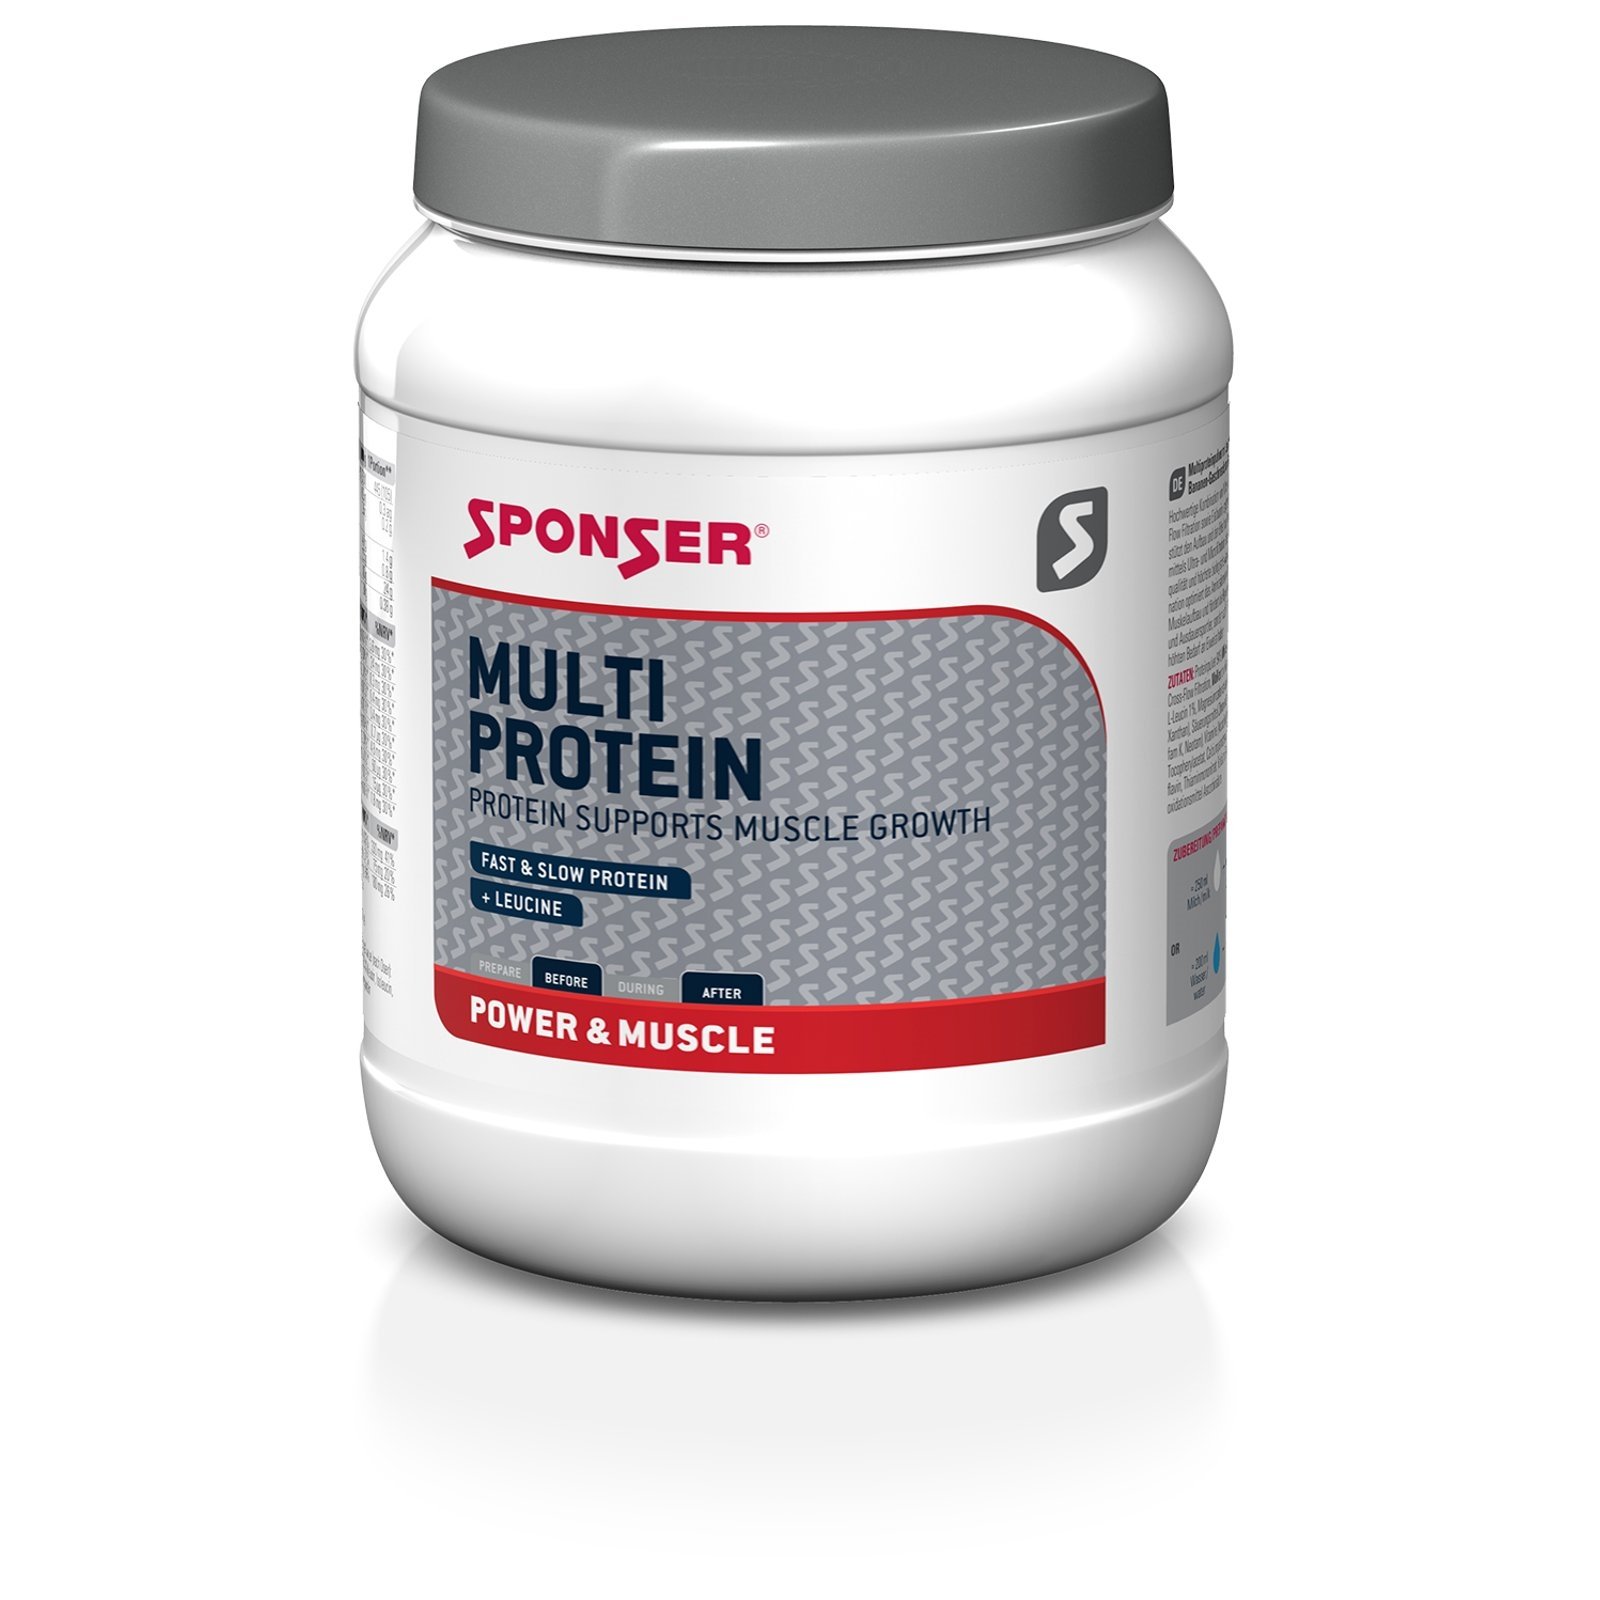 Neu Multi Protein CFF Vanille 425g Sponser Unisex Weiß onesize